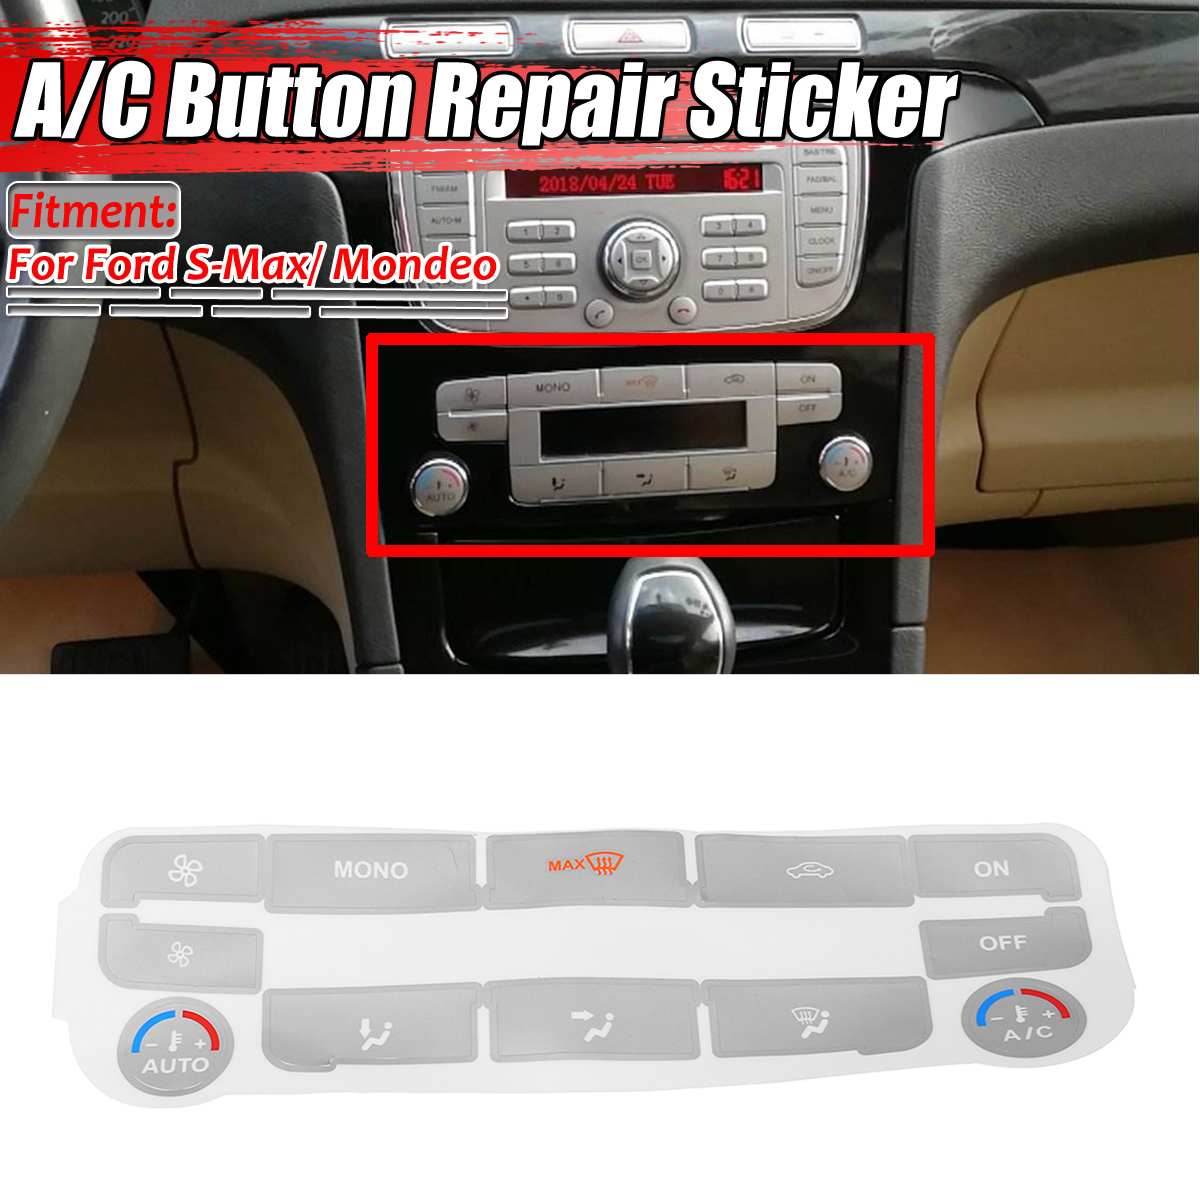 Zilveren Auto Airconditioning A/C Klimaat Controle Knop Reparatie Sticker Decal Forford S-Max/Voor Mondeo auto Stickers Fix Lelijke Knop